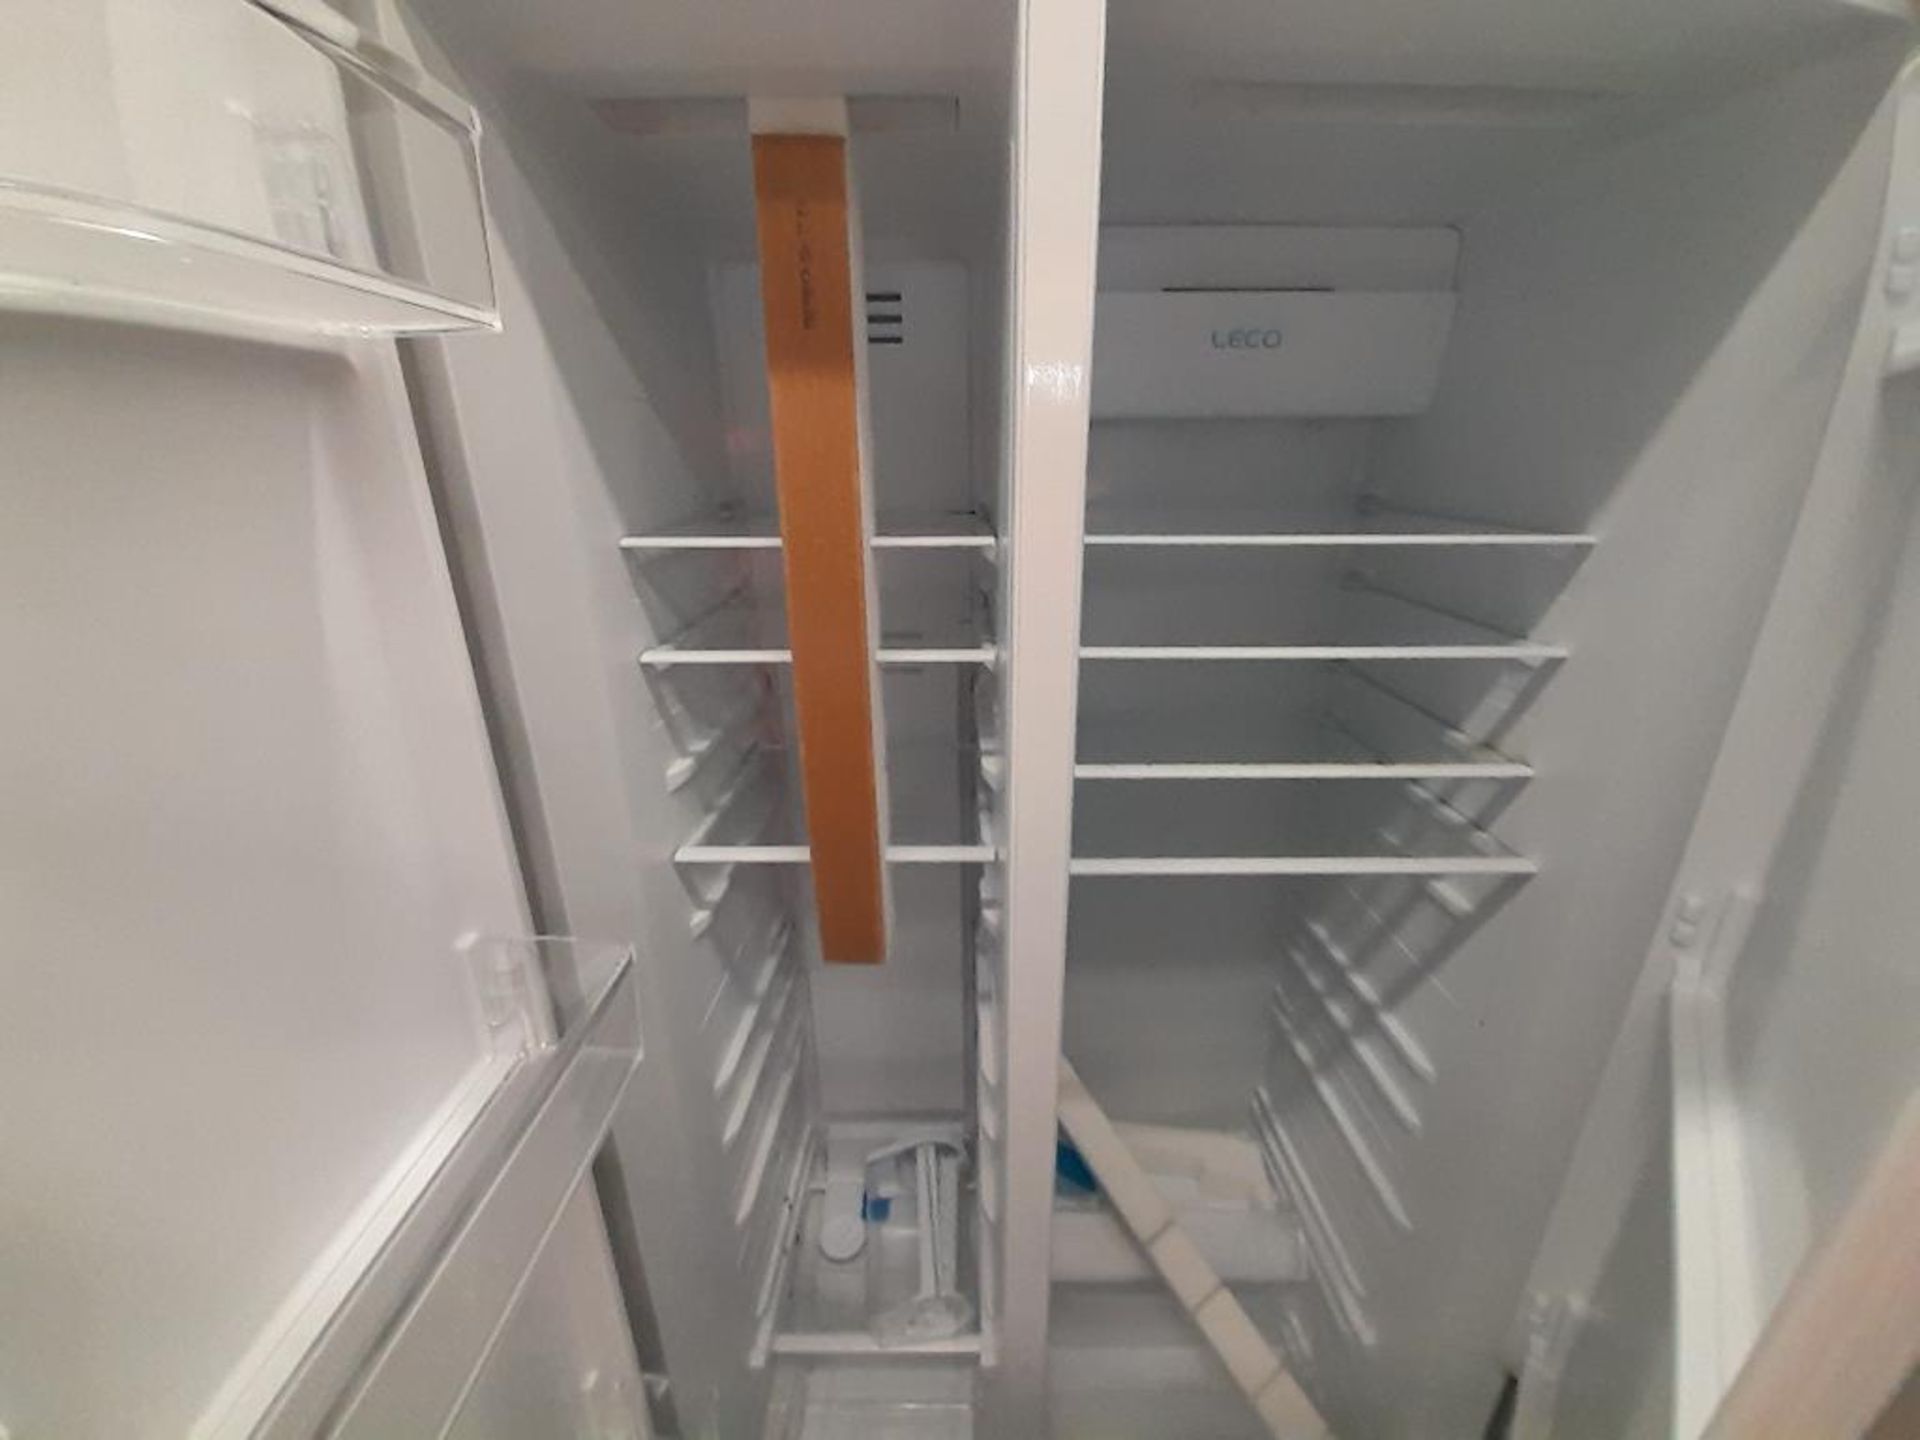 Lote de 2 refrigeradores contiene: 1 Refrigerador Marca MABE, Modelo IWMRP1, Serie ND, Color NEGRO; - Image 6 of 7